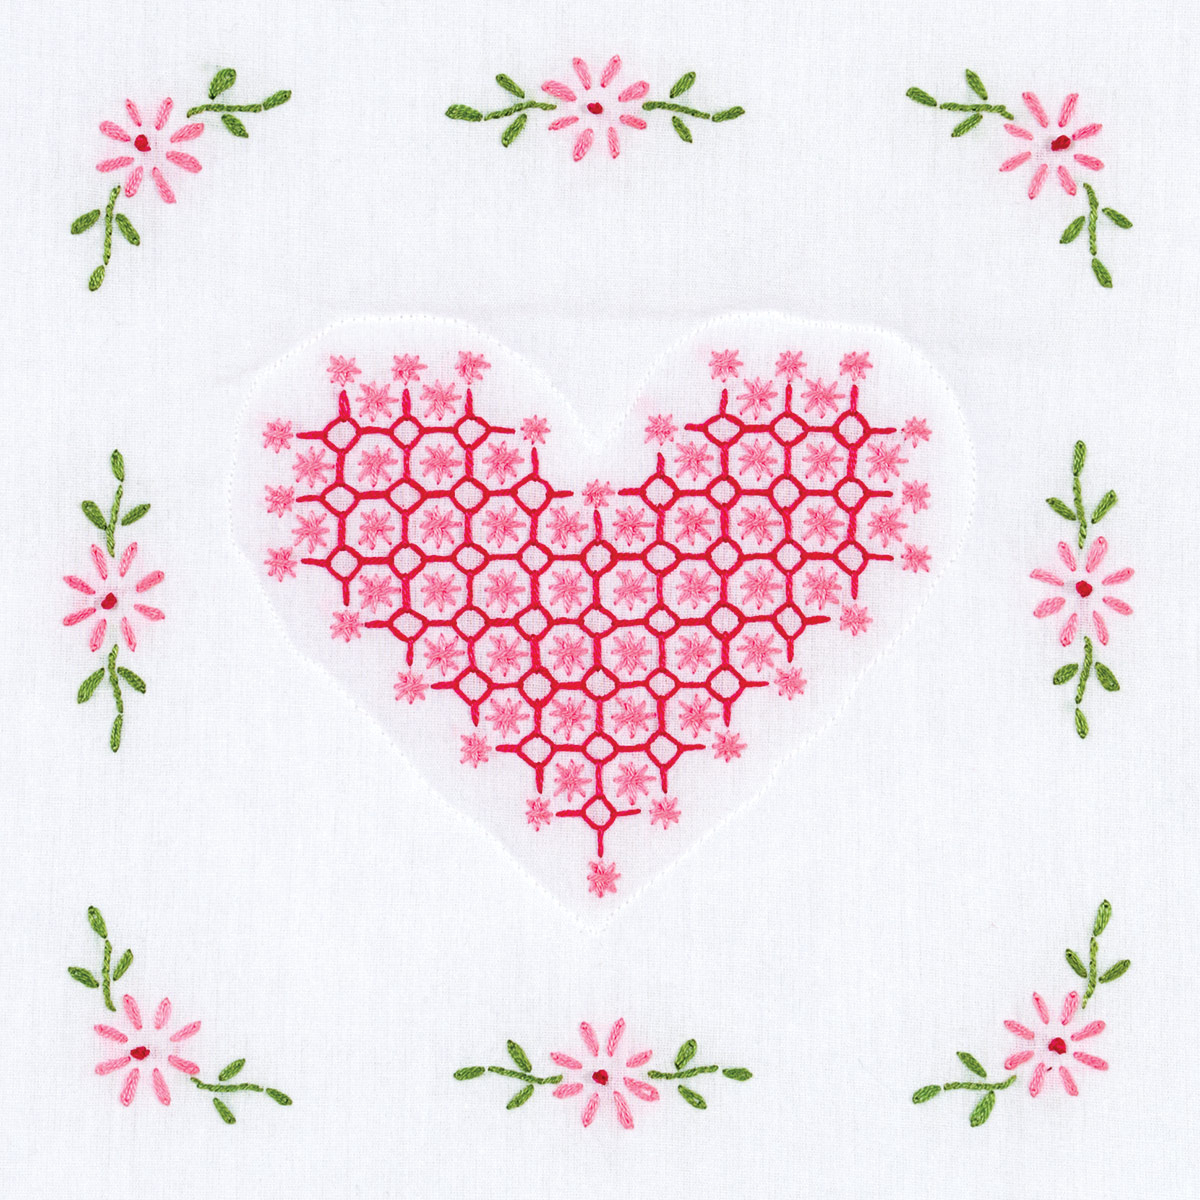 Chicken Scratch Embroidery Patterns Chicken Scratch Heart 9 Quilt Blocks